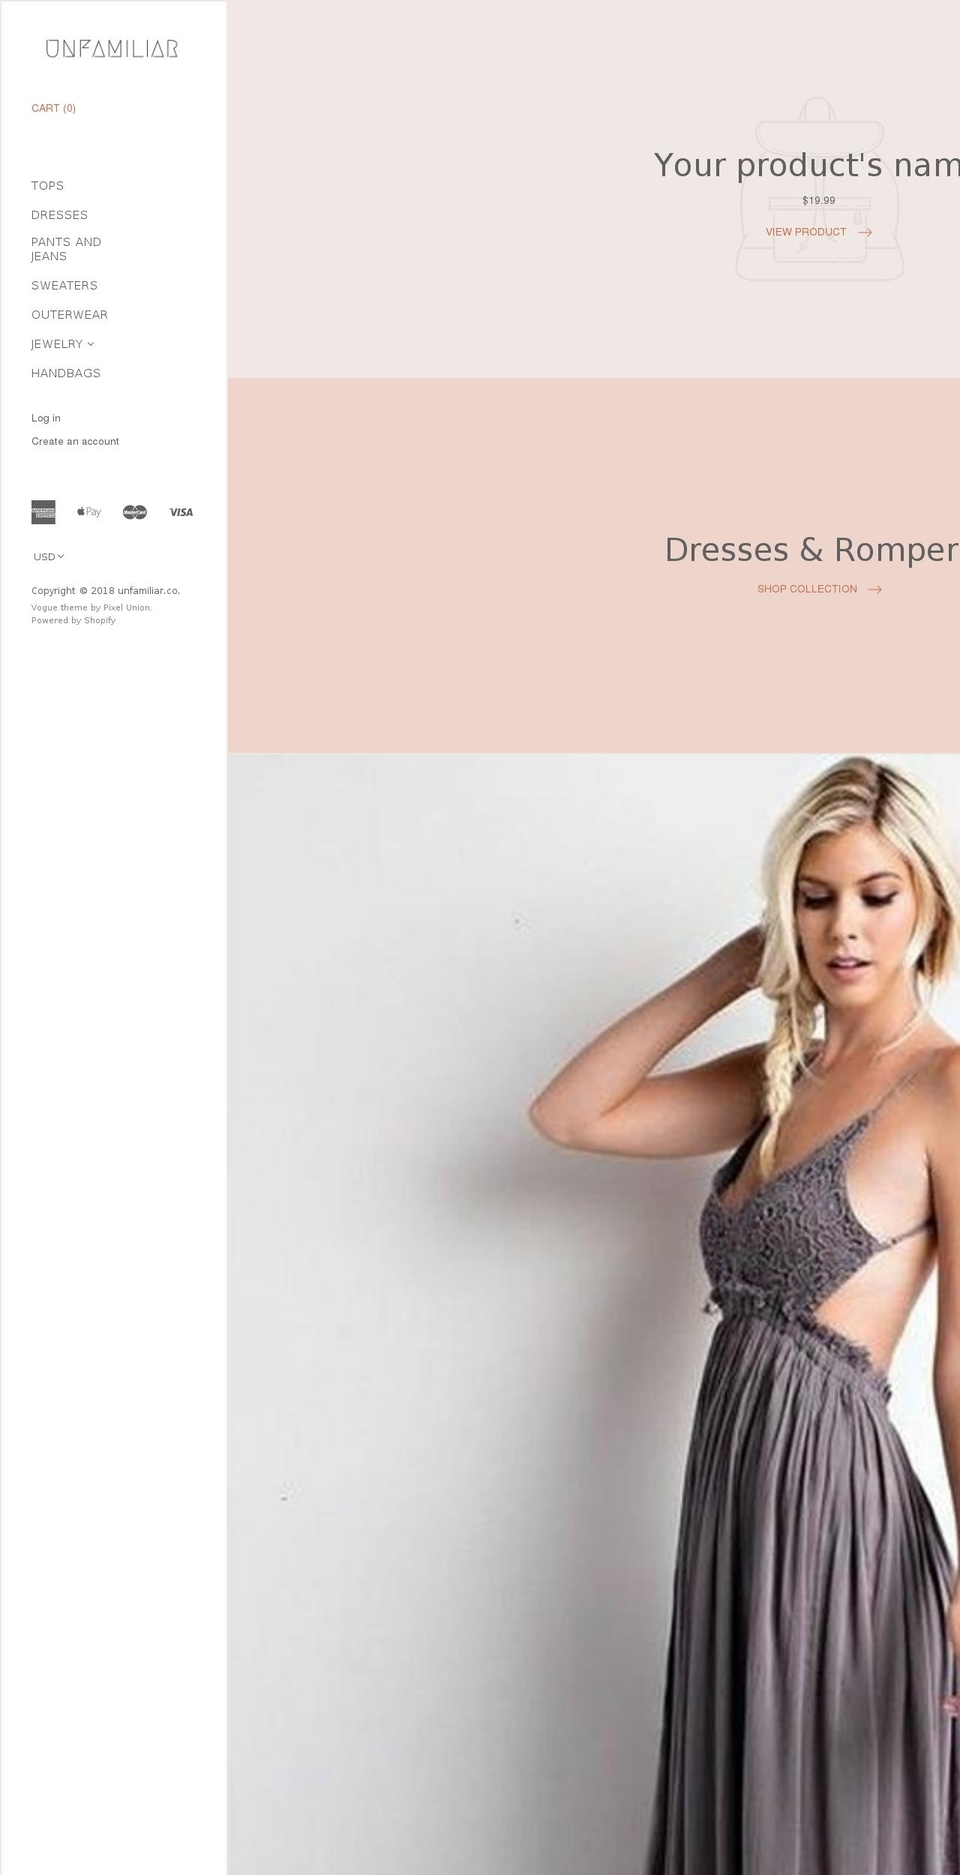 Vogue Shopify theme site example unfamiliarco.com